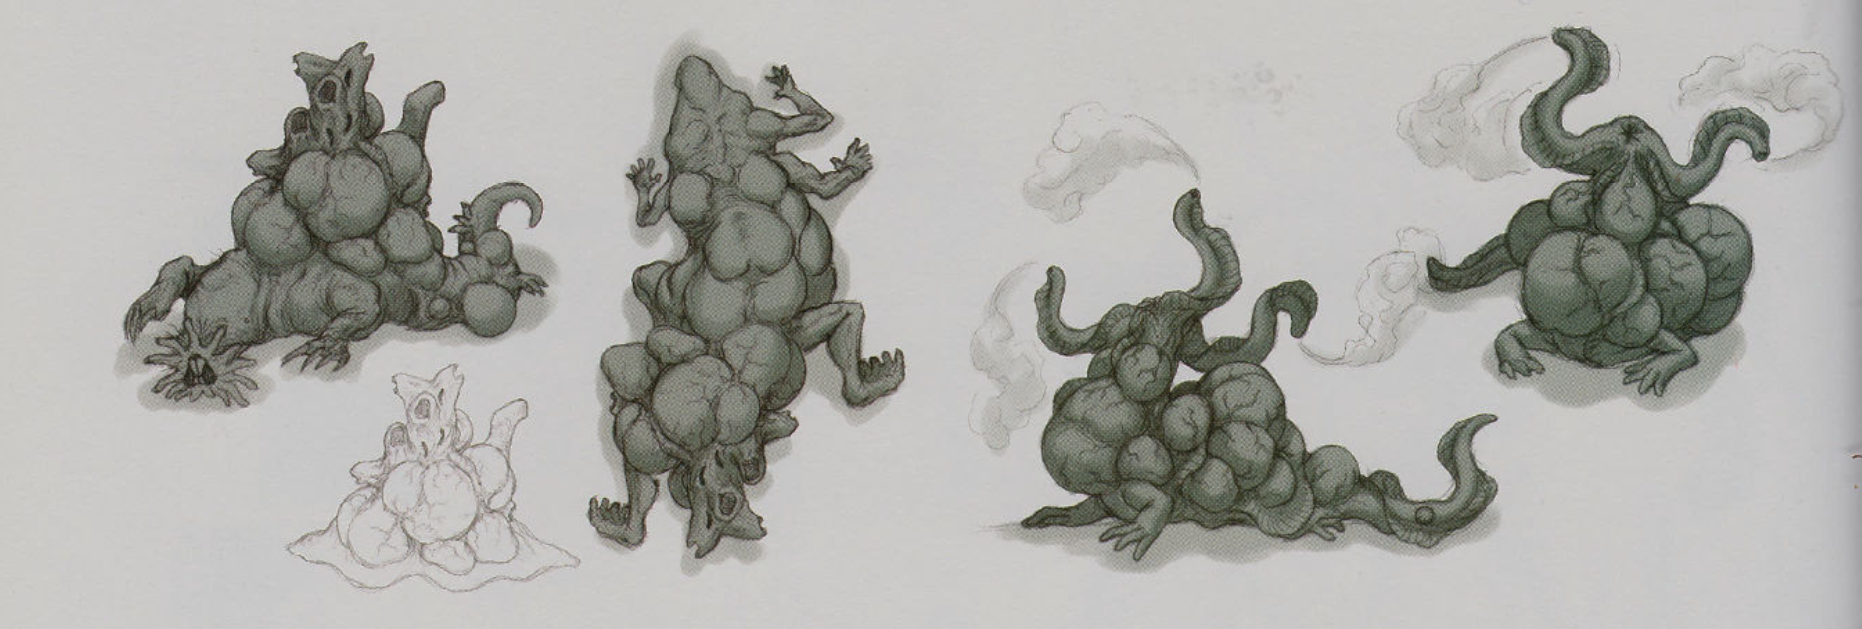 两种二阶段蛞蝓型变异体设计方案